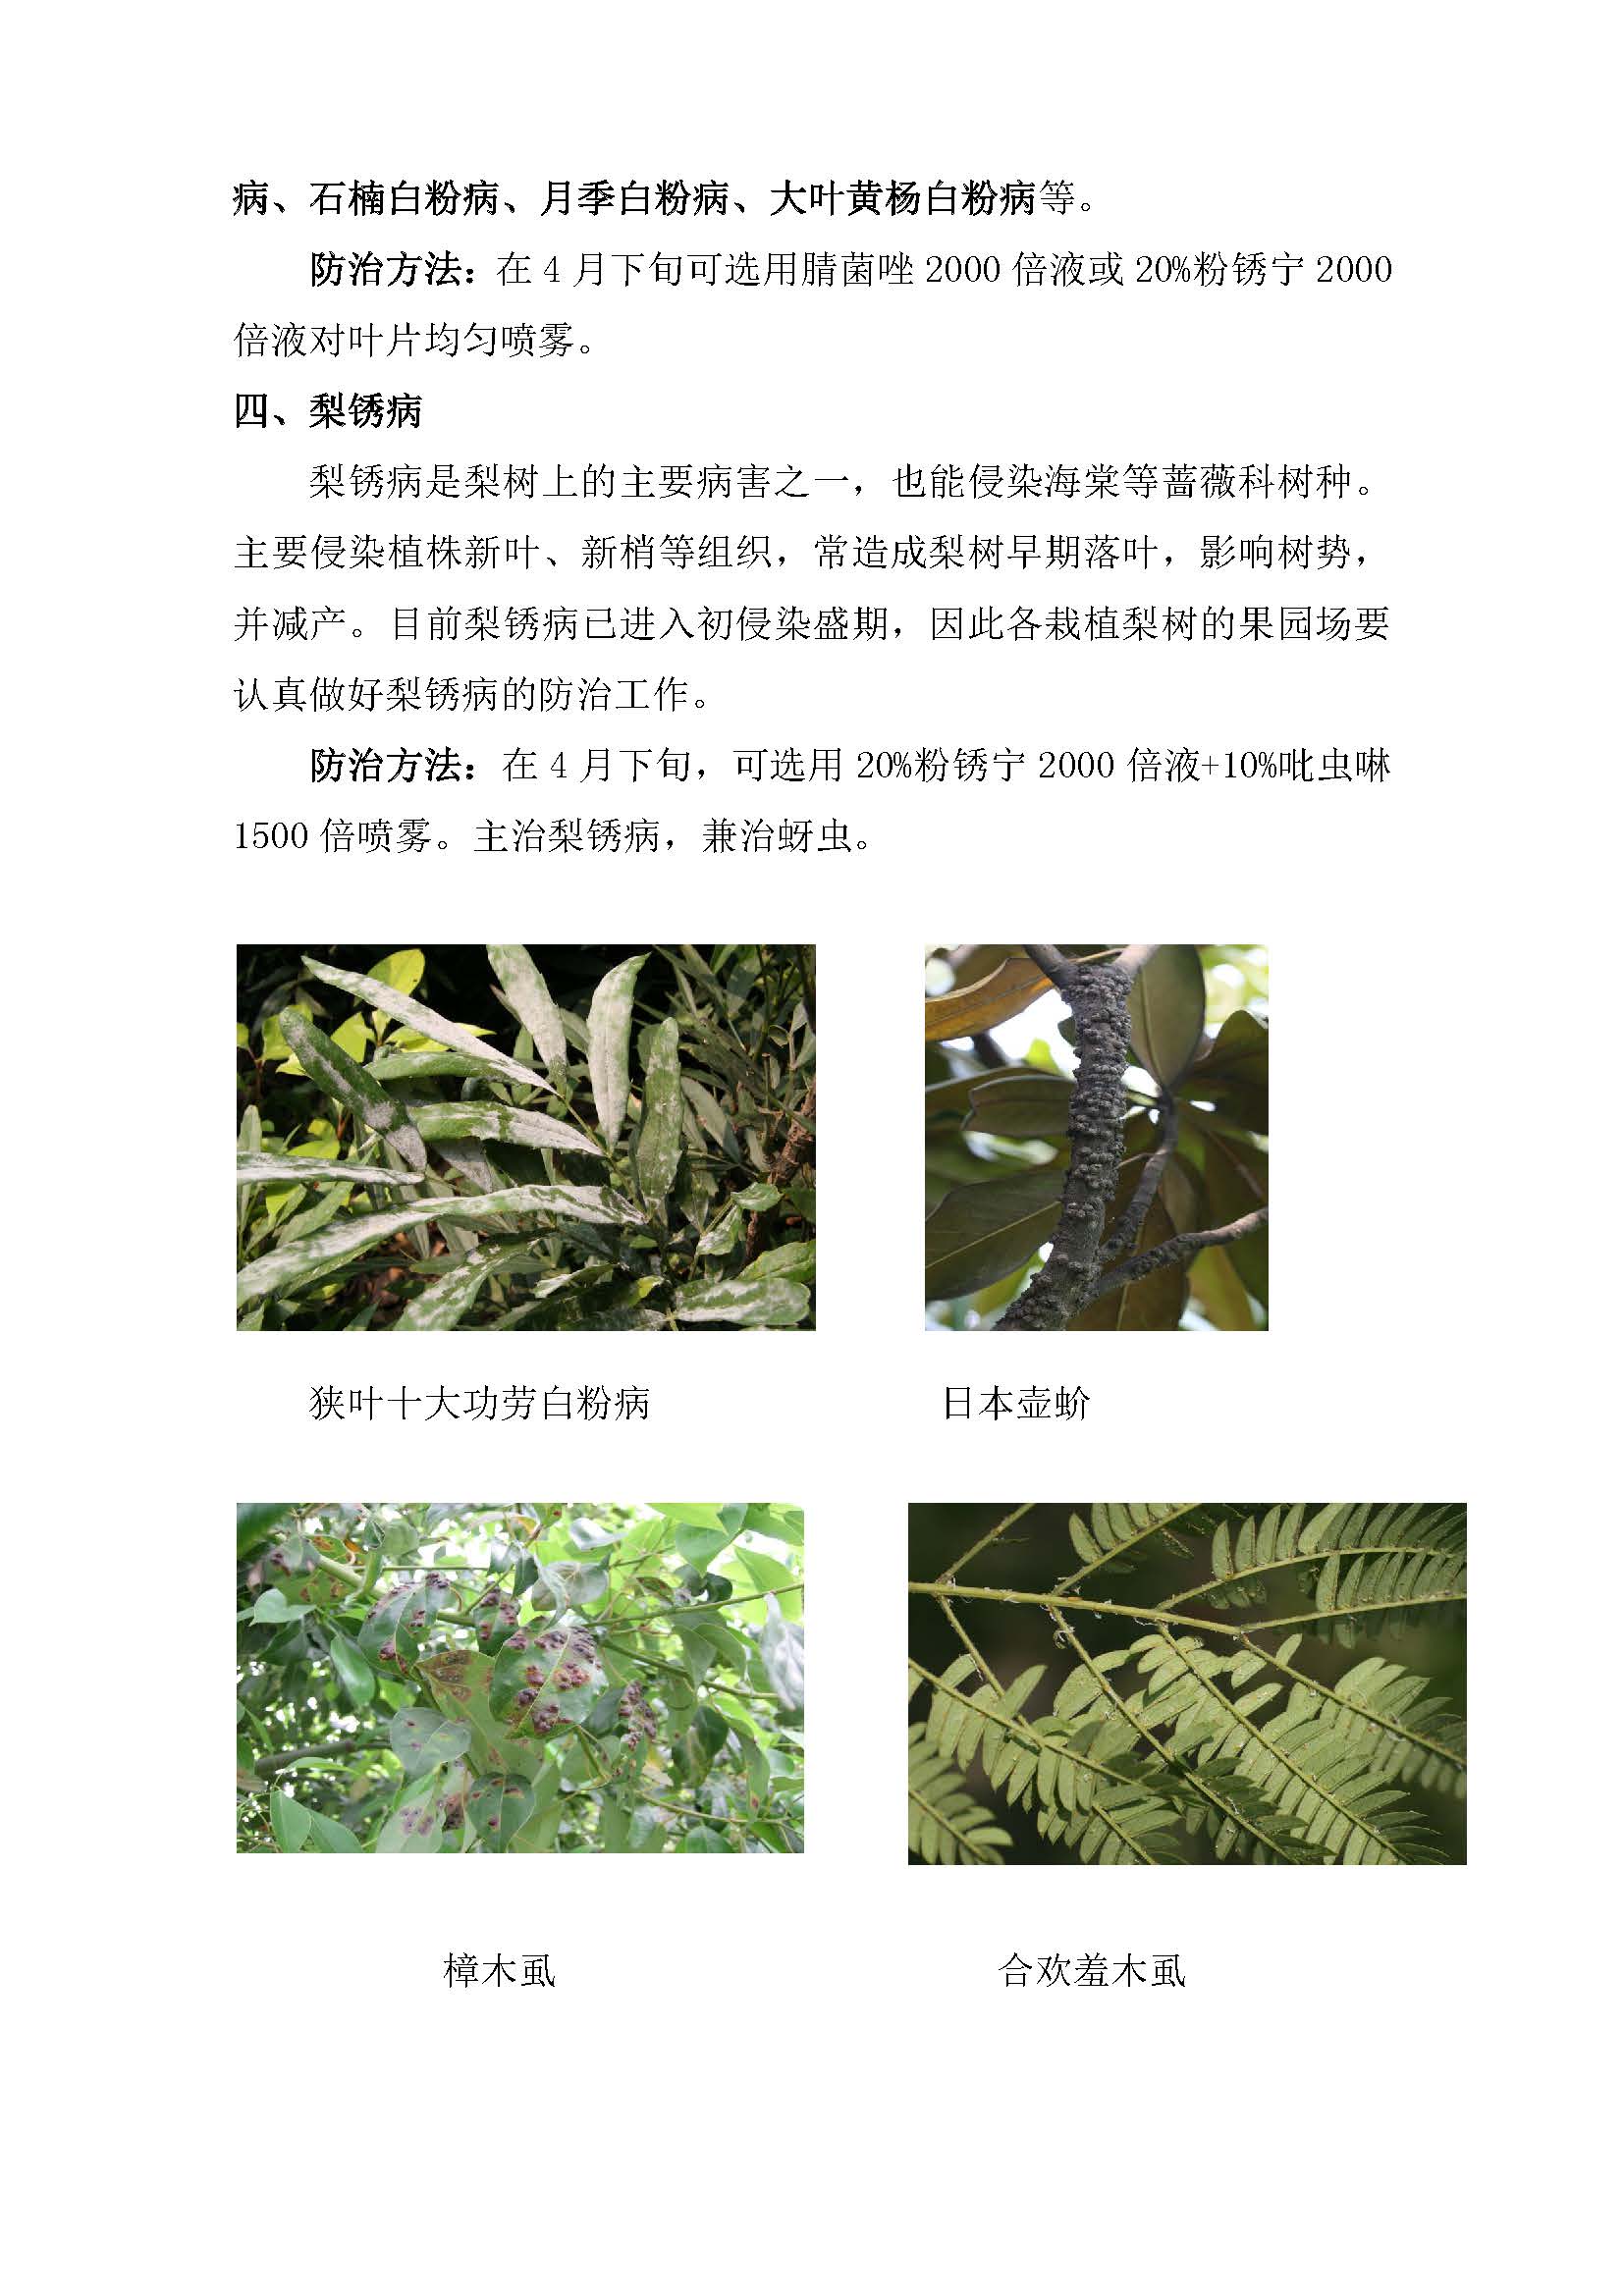 闵行区林业有害生物预警信息191_页面_2.jpg